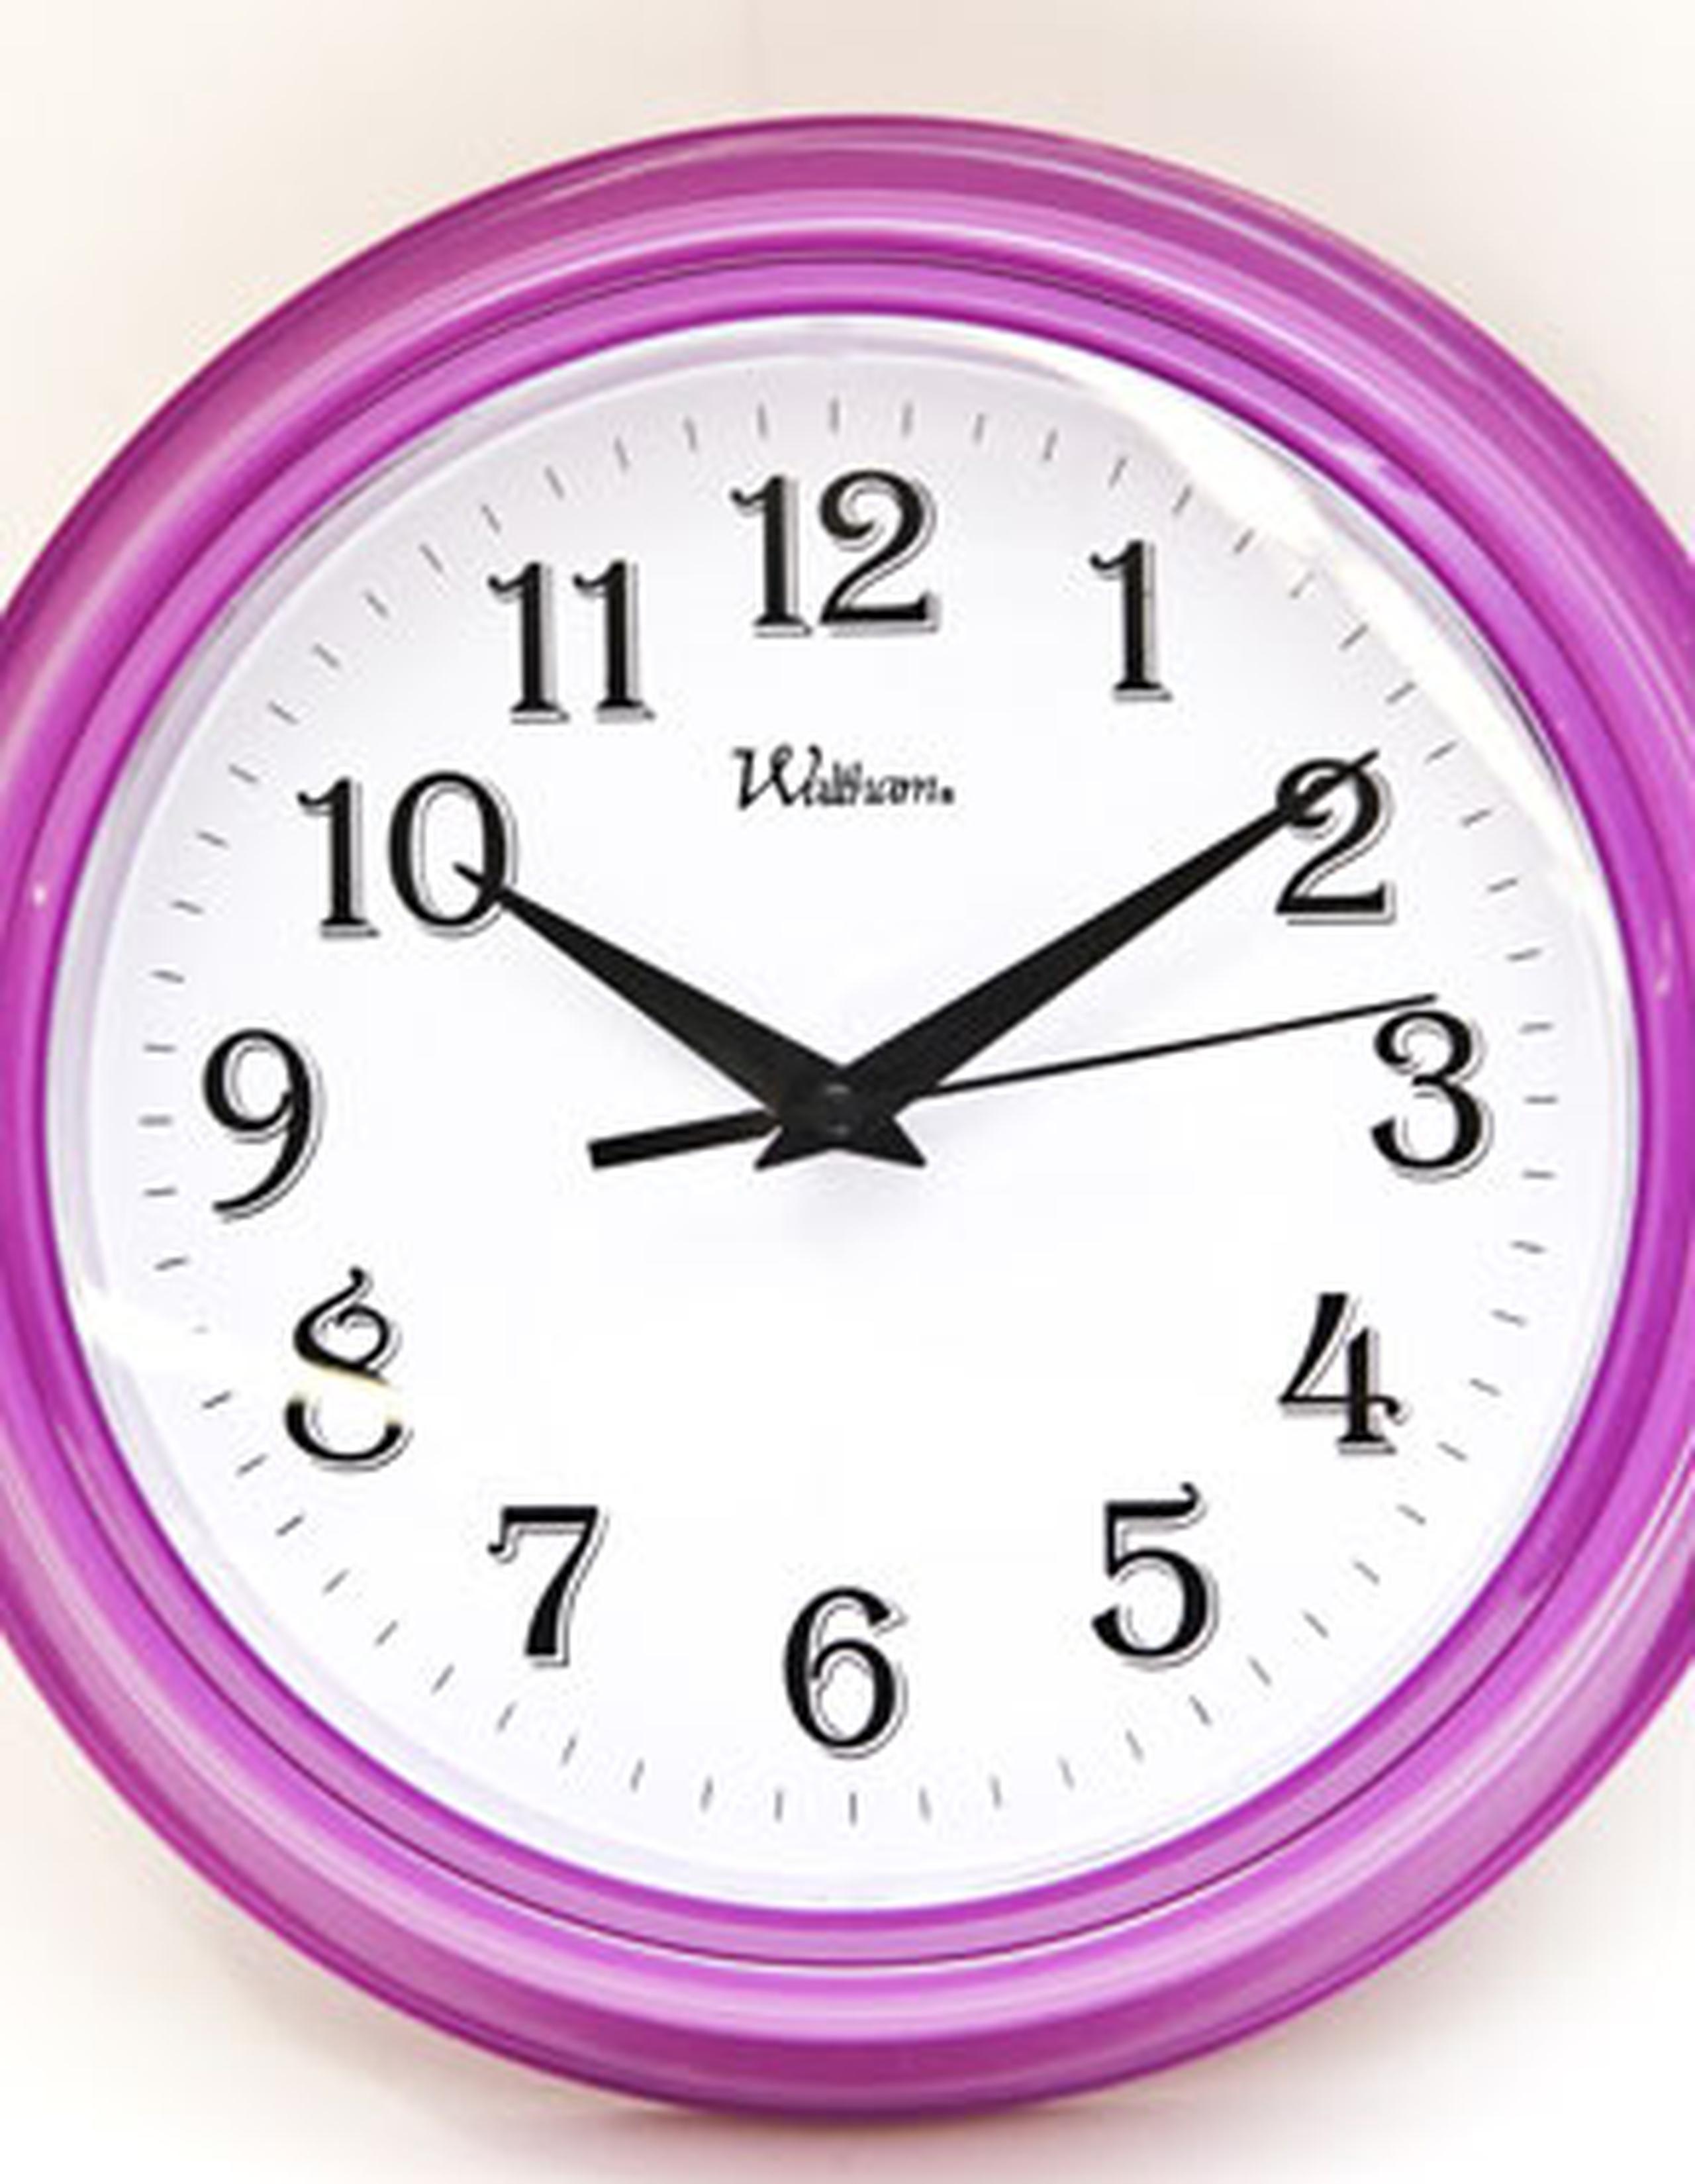 Desde 1972, los relojes han añadido hasta 24 segundos suplementarios para actualizar la velocidad de rotación de la Tierra y gracias a tecnologías de medición del tiempo más precisas. (Archivo)